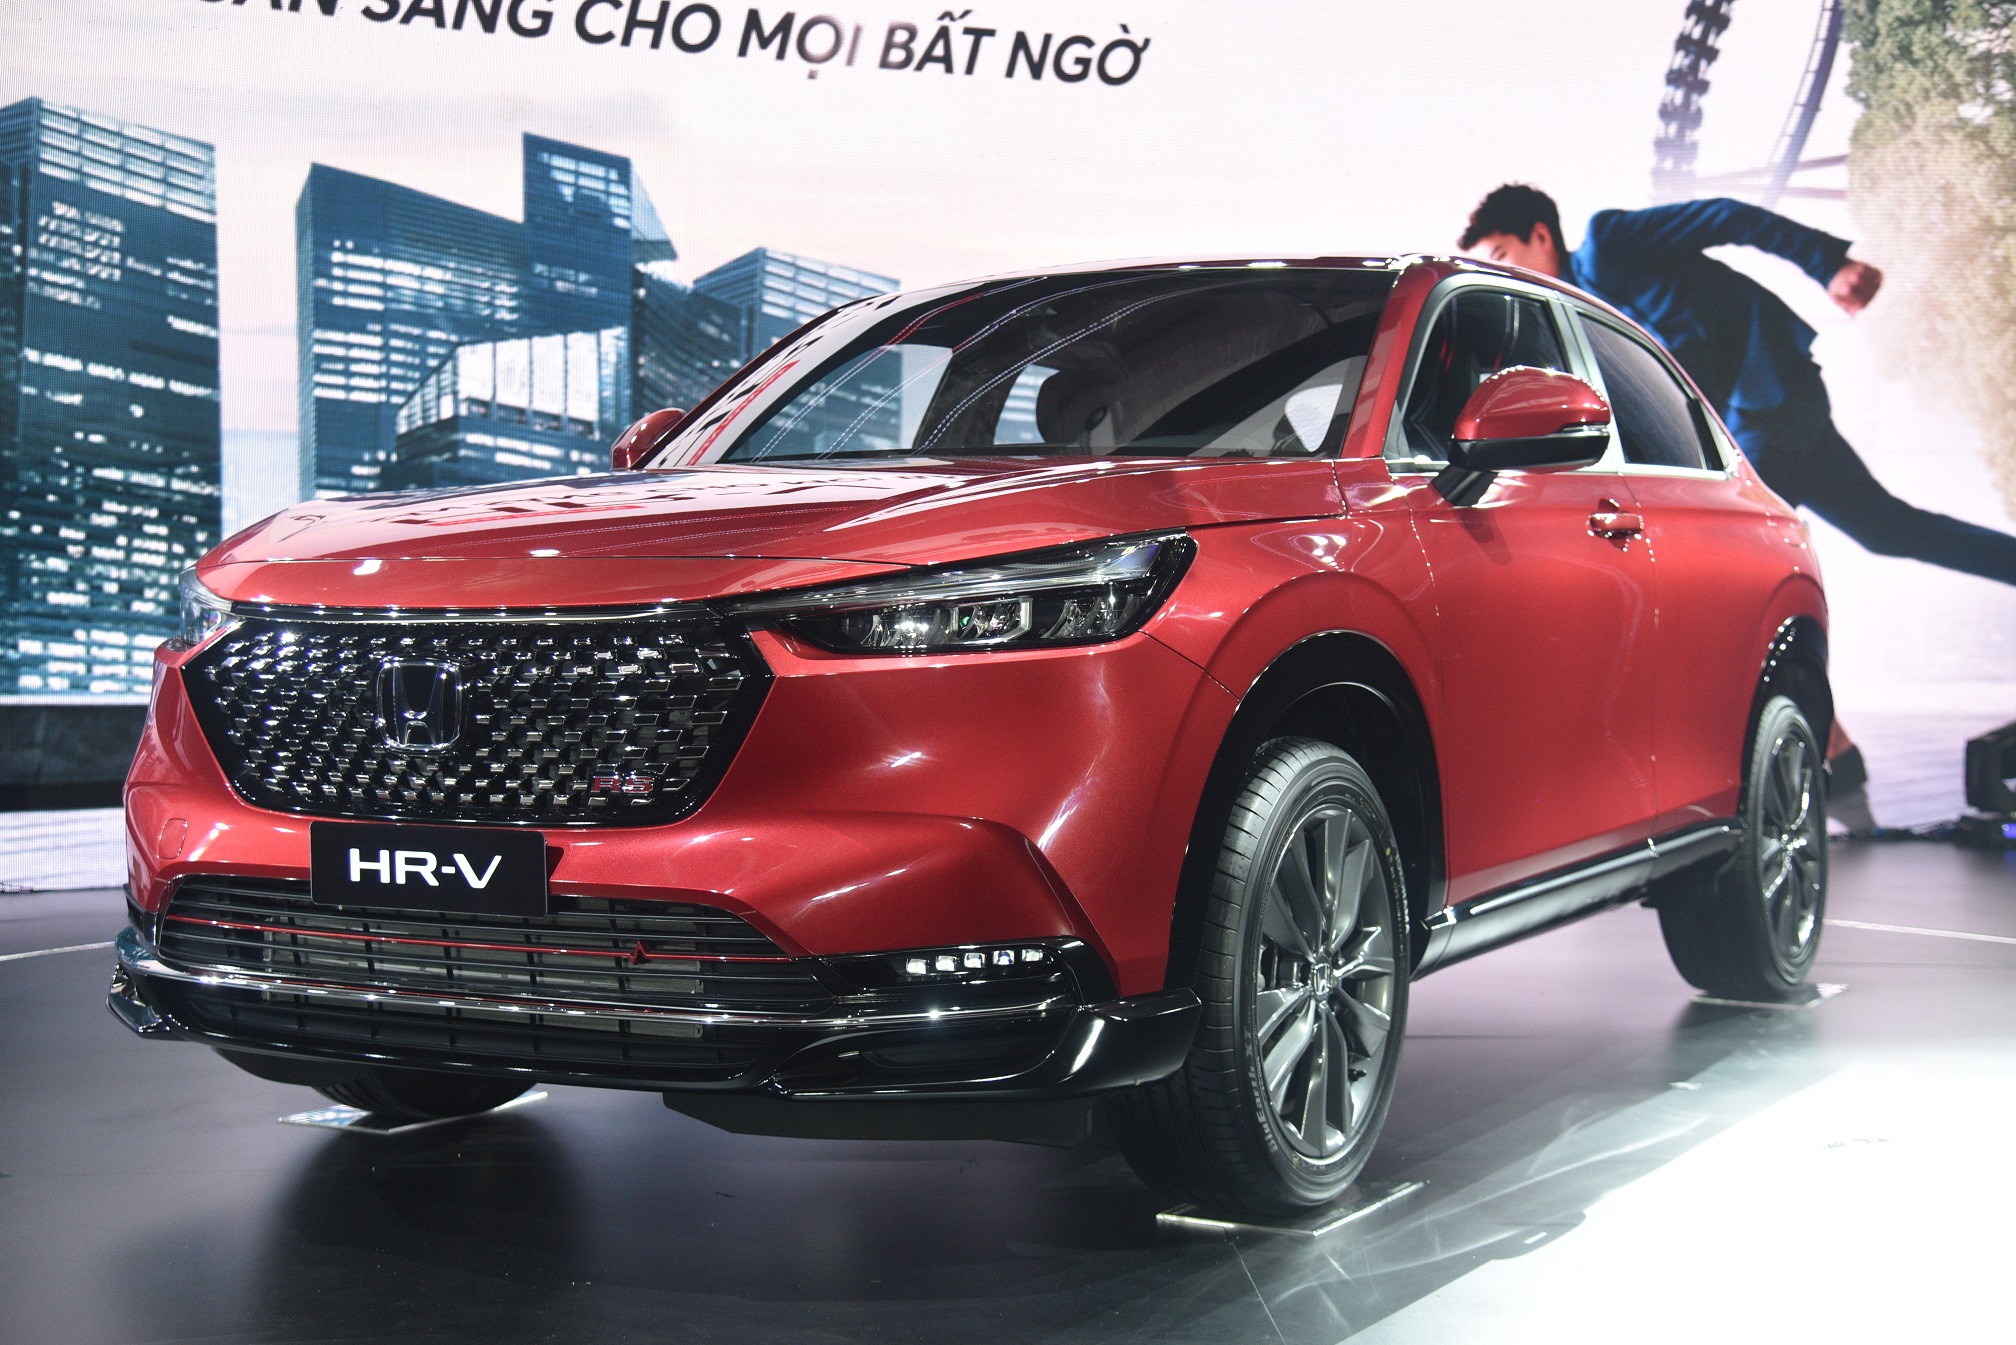 Hơn 400 xe Honda Civic và HR-V đời 2022 bị triệu hồi tại Việt Nam Chi tiết Honda HR-V 2022 hoàn toàn mới, giá từ 826 triệu đồng tại Việt Nam honda-hr-v-2022-6.JPG